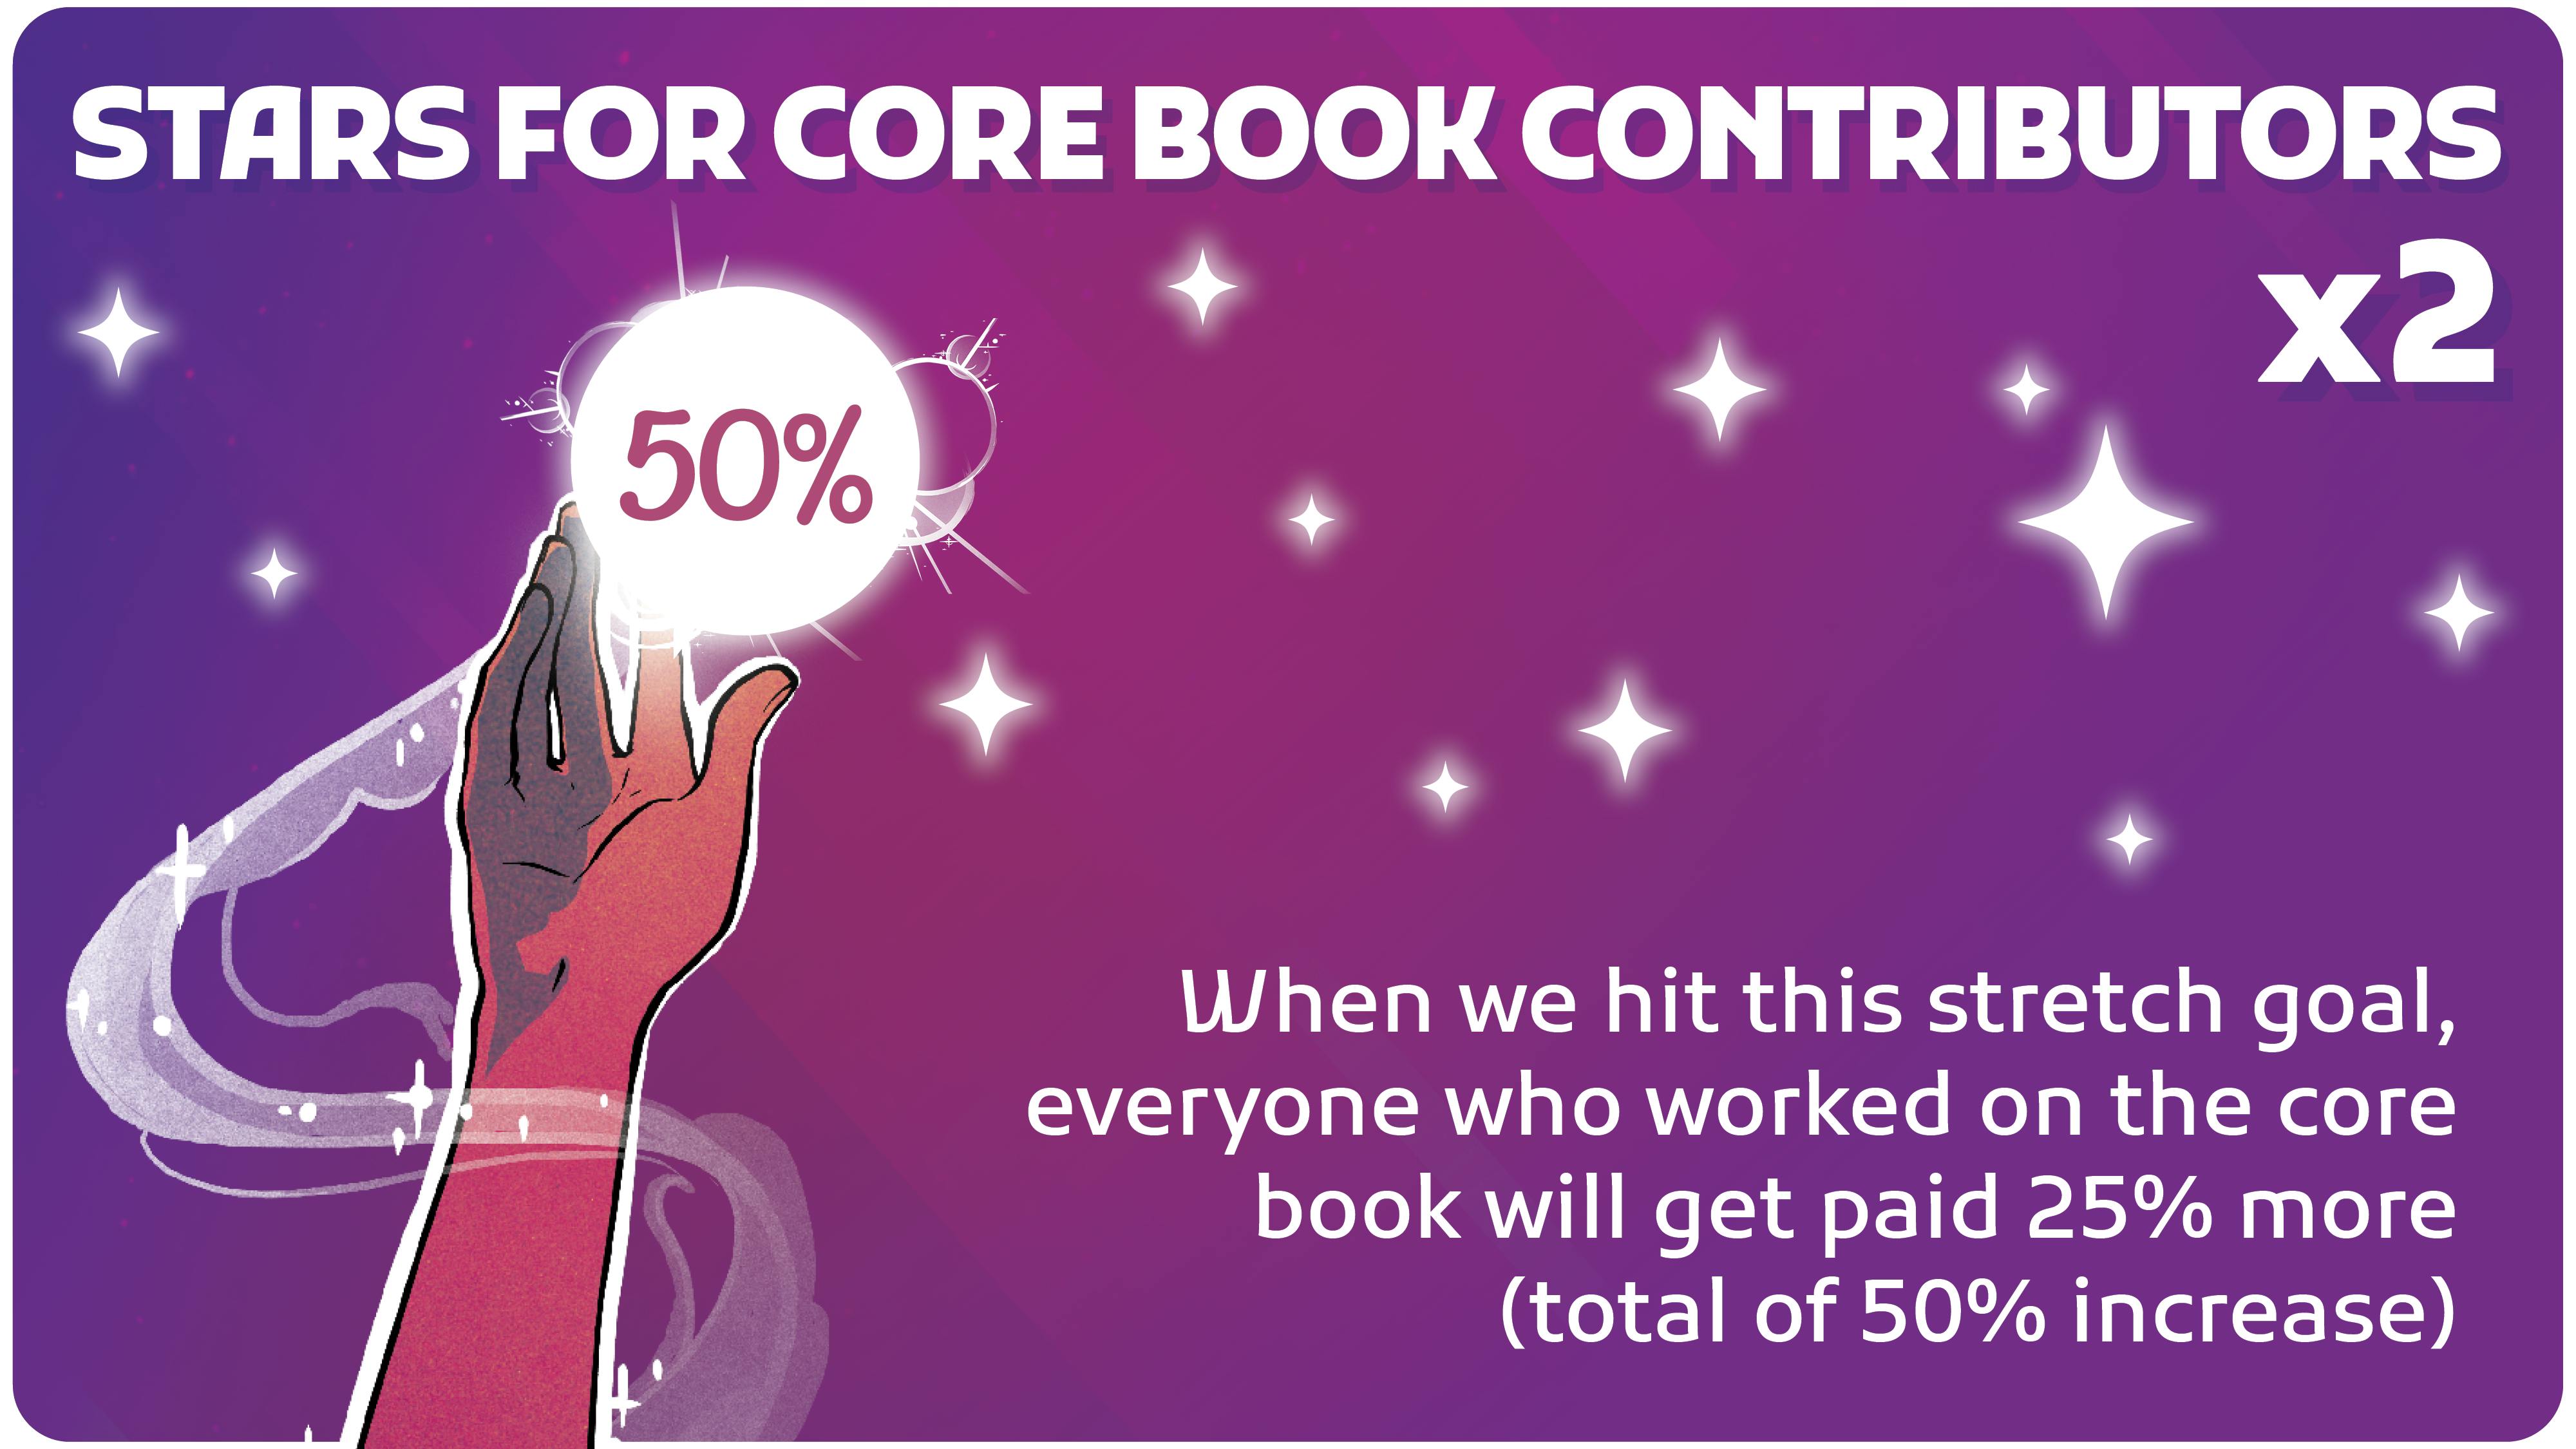 Stars for Core Book Contributors x2